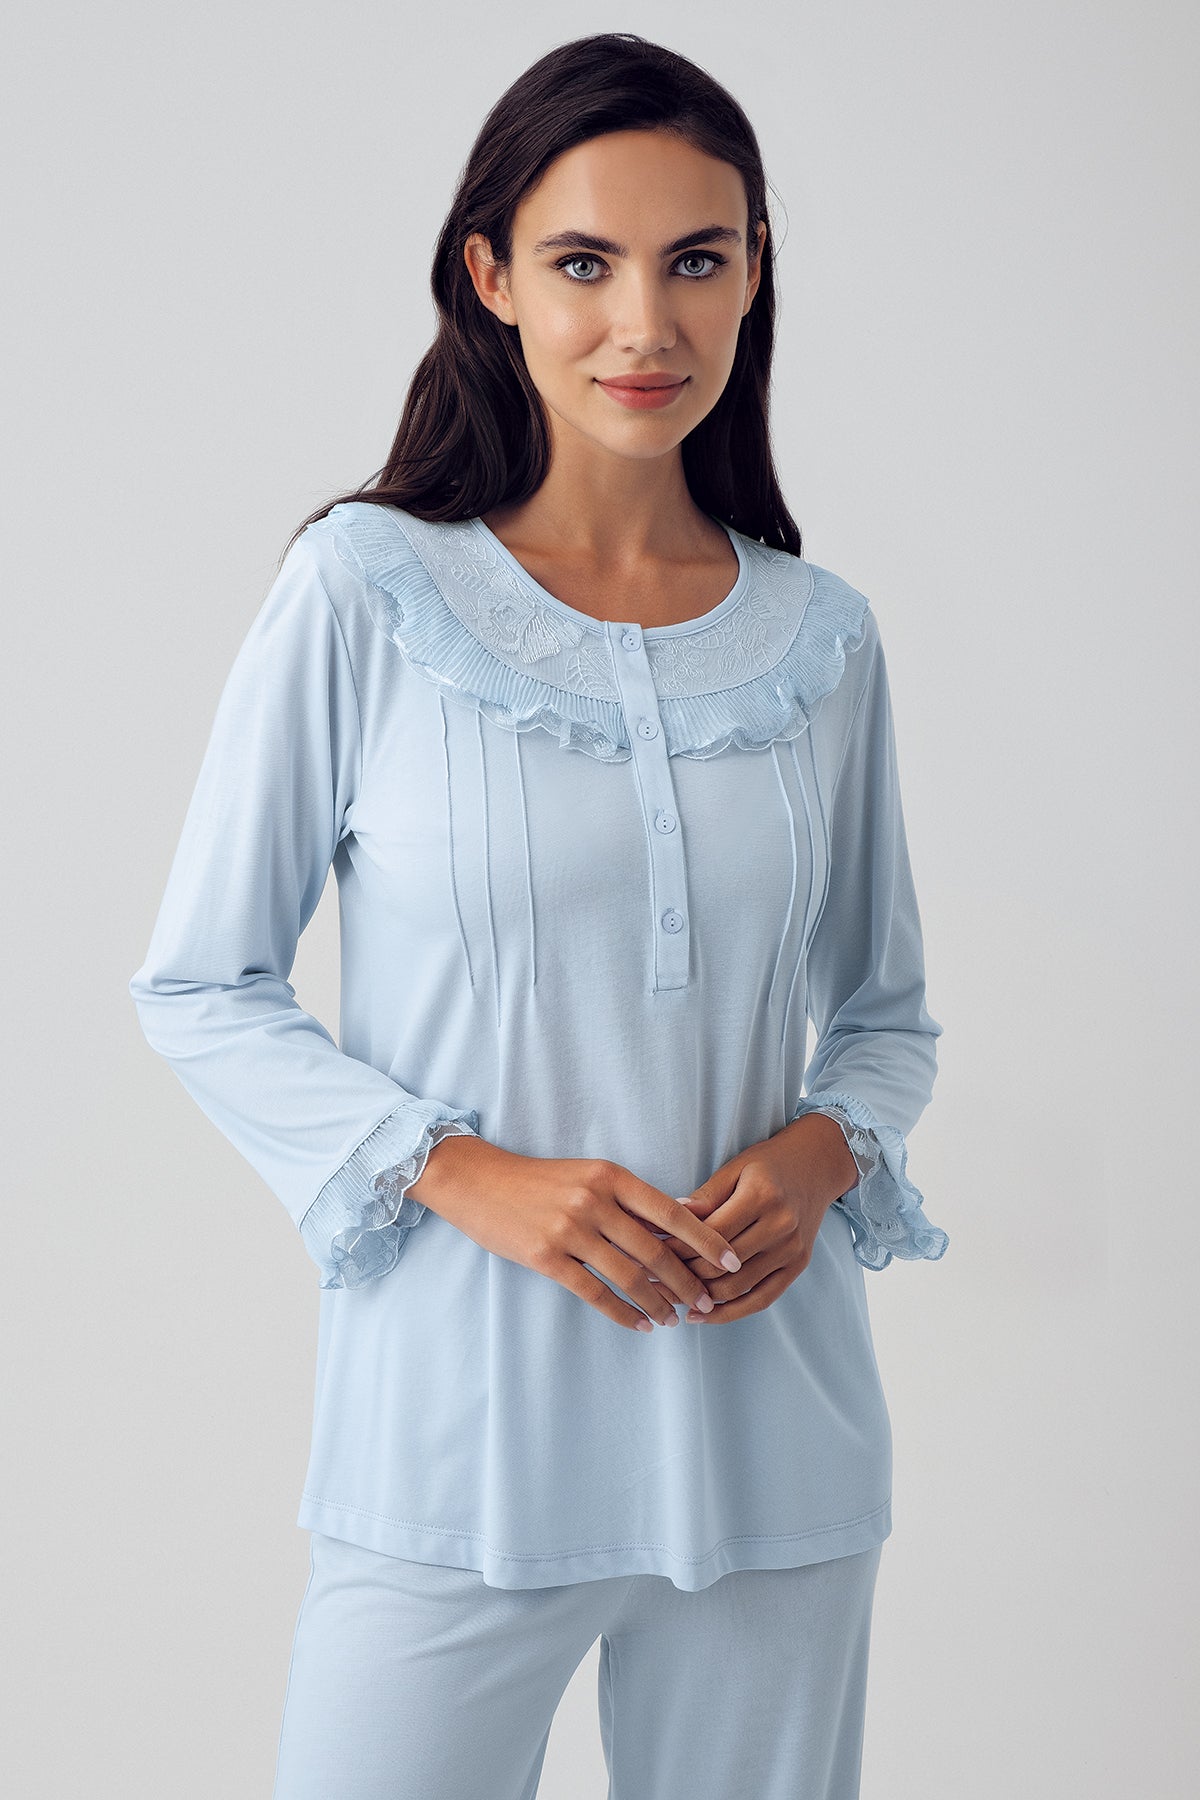 Dantel Detaylı Lohusa Pijama Takımı Mavi - 15210